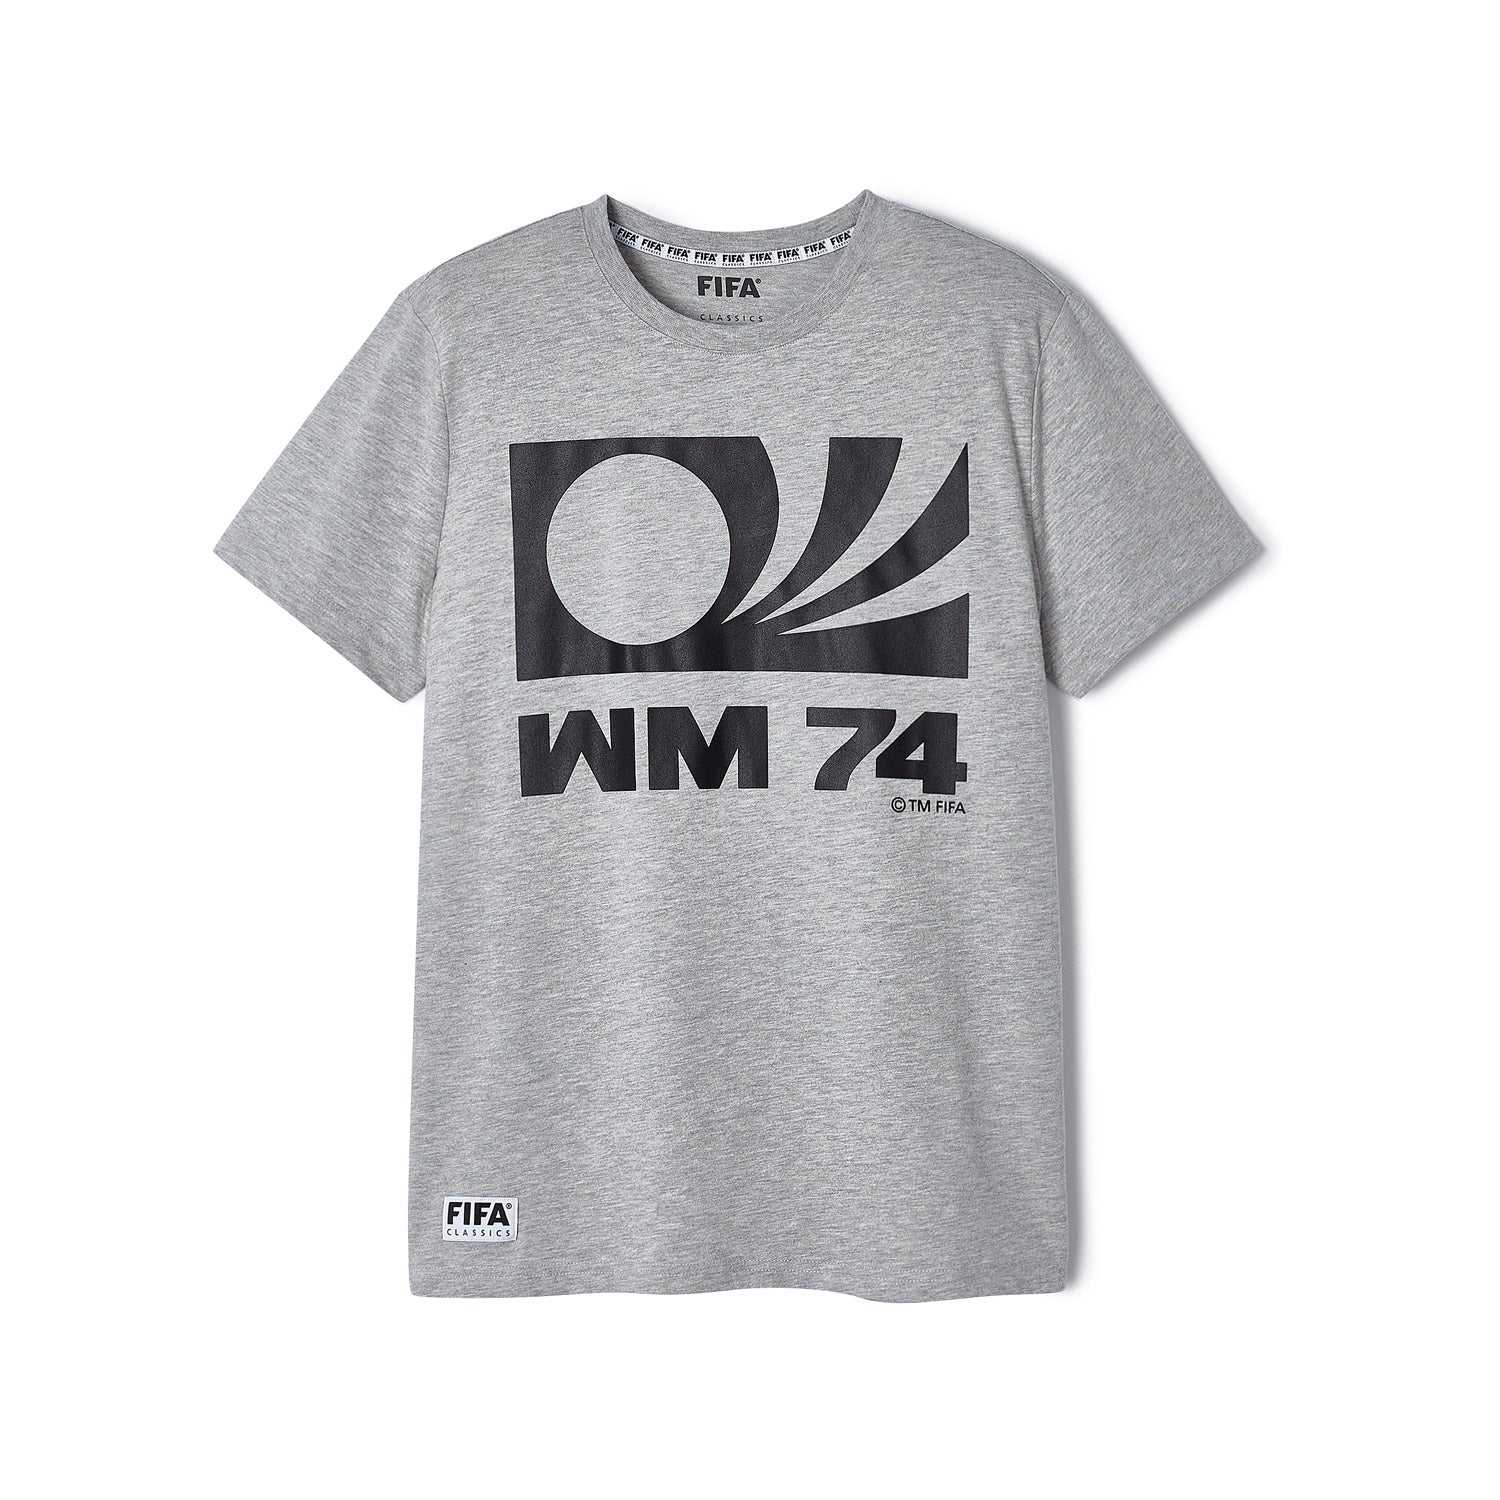 FIFA Rewind Germany '74 Emblem T-Shirt - Men's